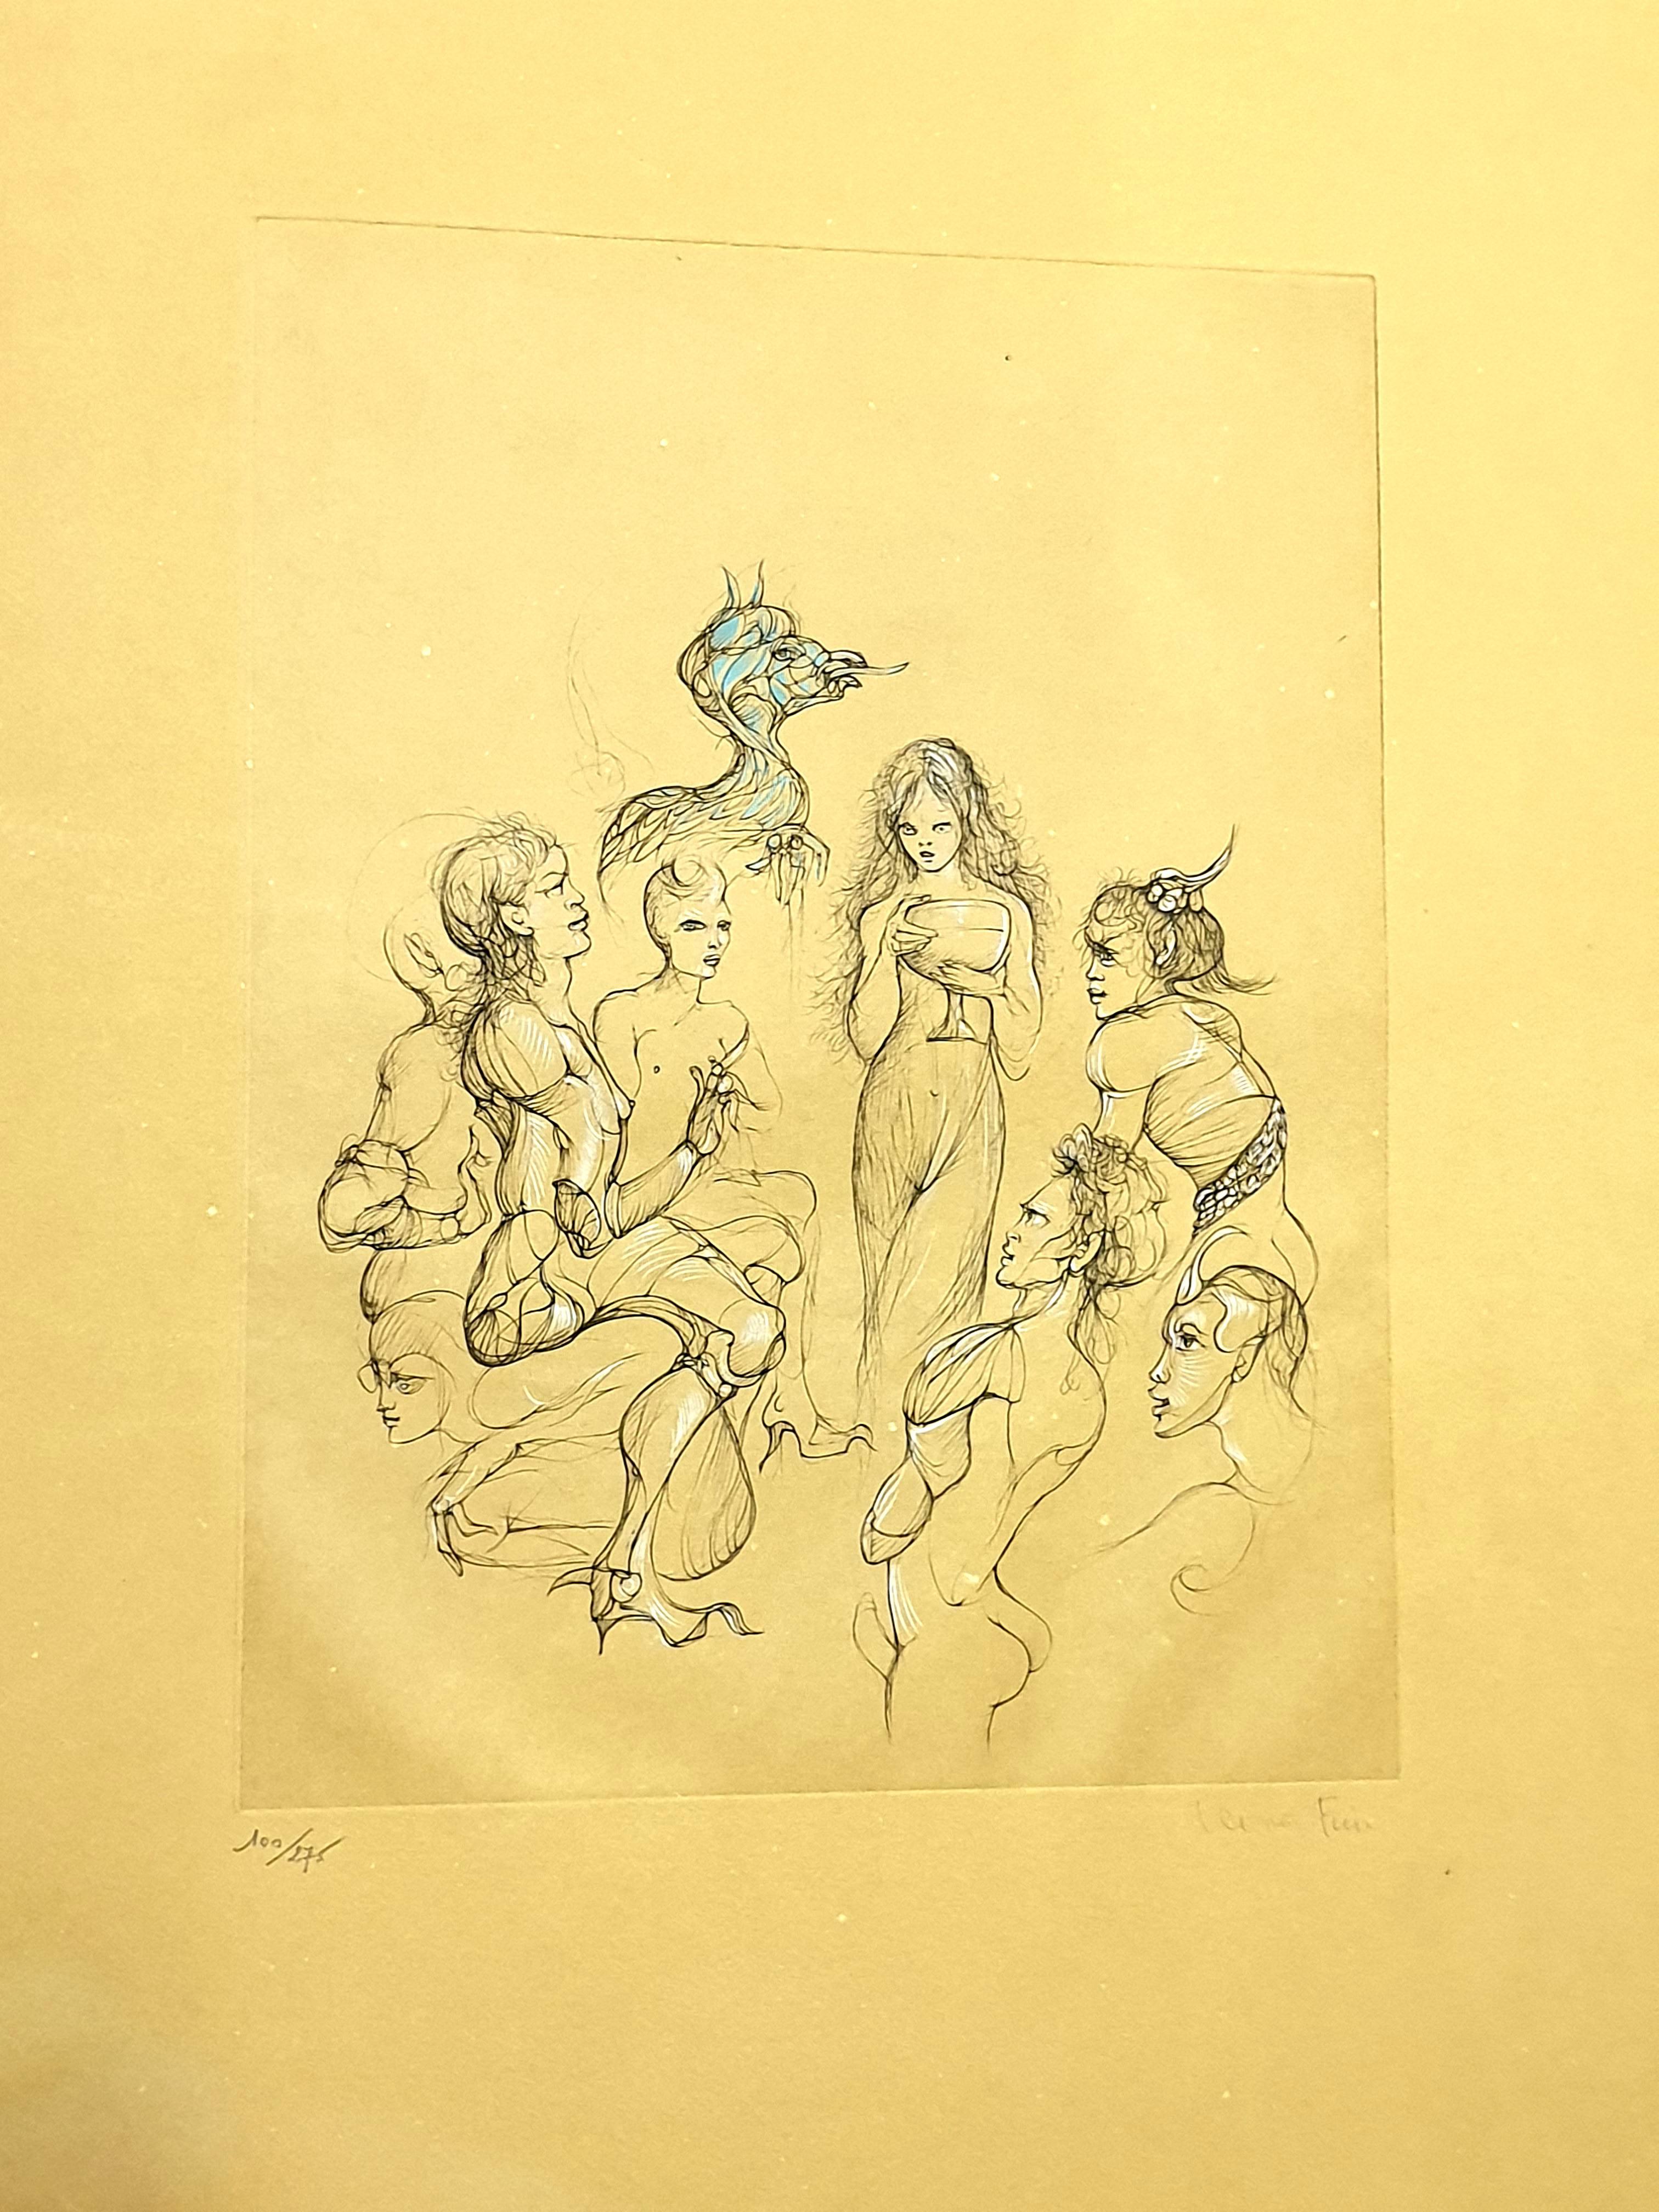 Leonor Fini - Nimphs - Original Handsignierte Lithographie
Um 1982
Auf farbigem Papier
Handsigniert und nummeriert
Auflage: 275
Abmessungen: 69 x 52,5 cm